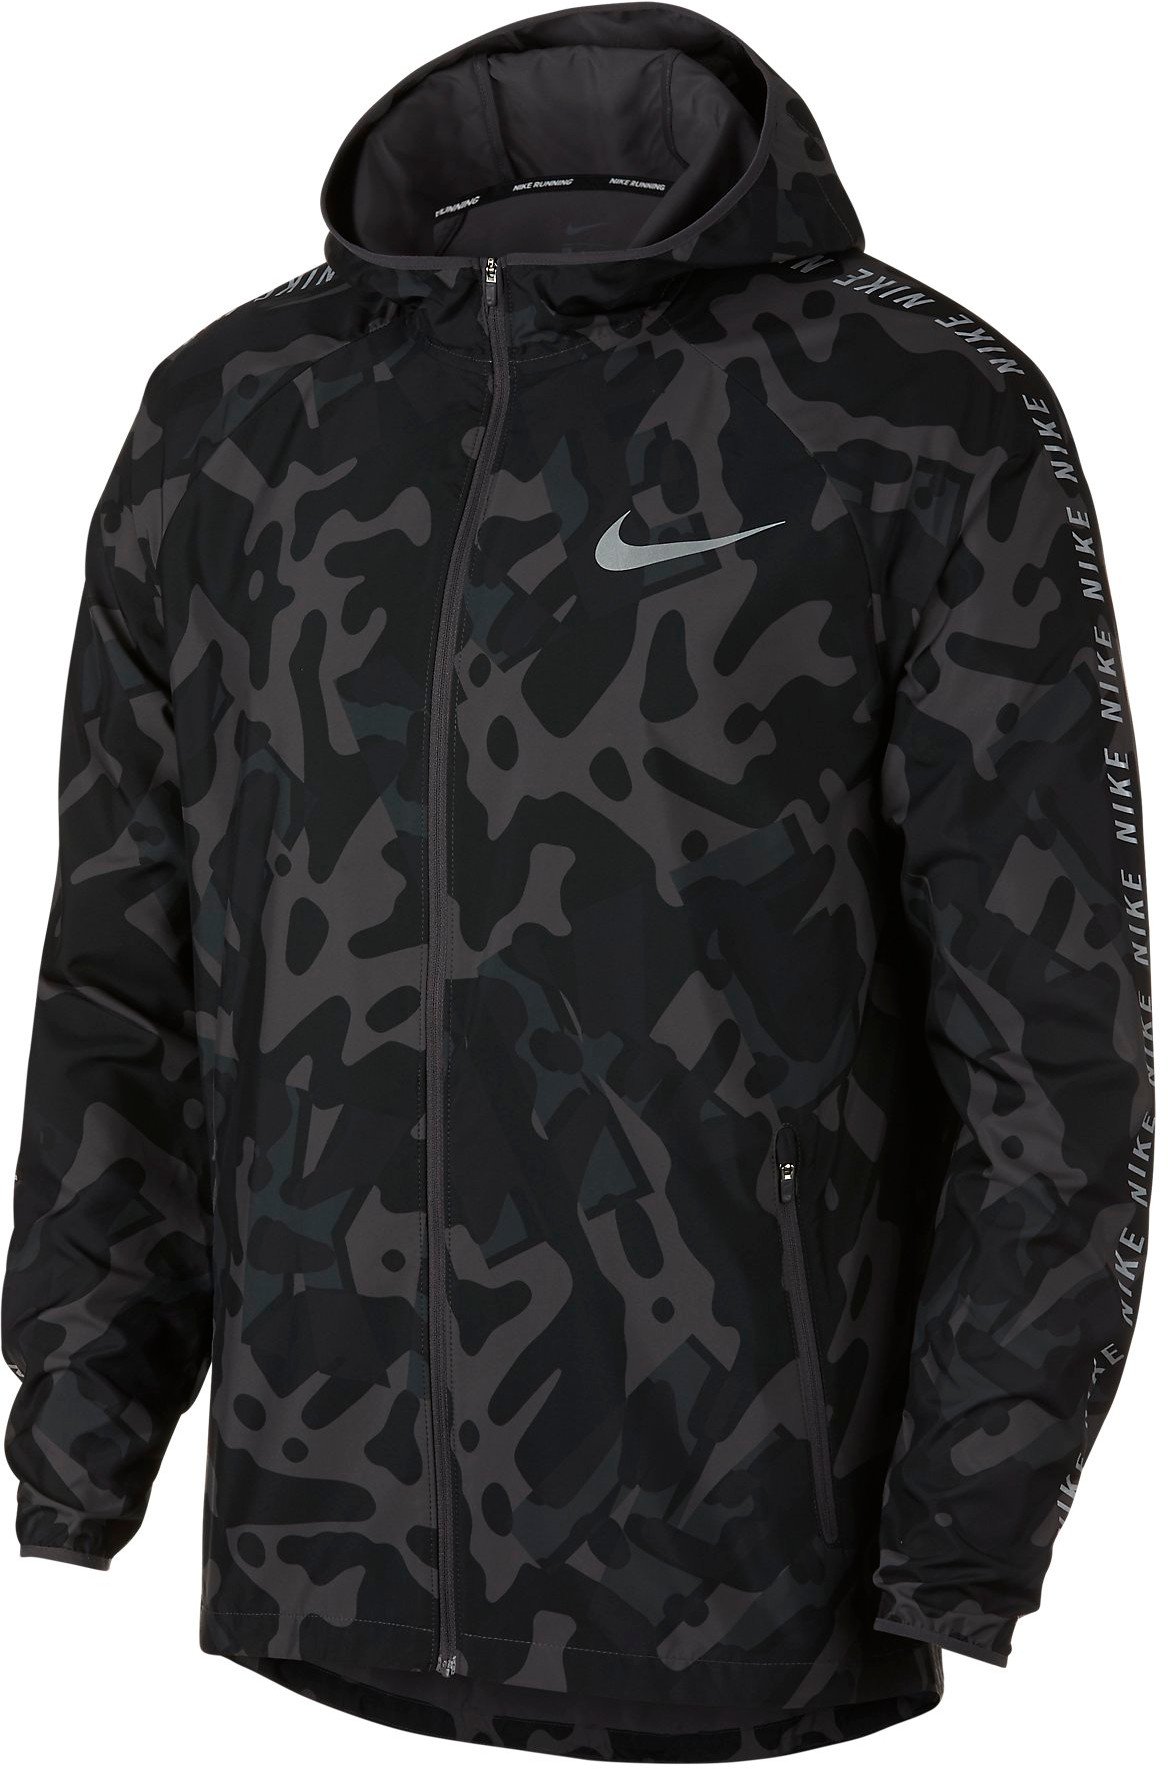 Pánská běžecká bunda s kapucí Nike Essential Flash GX